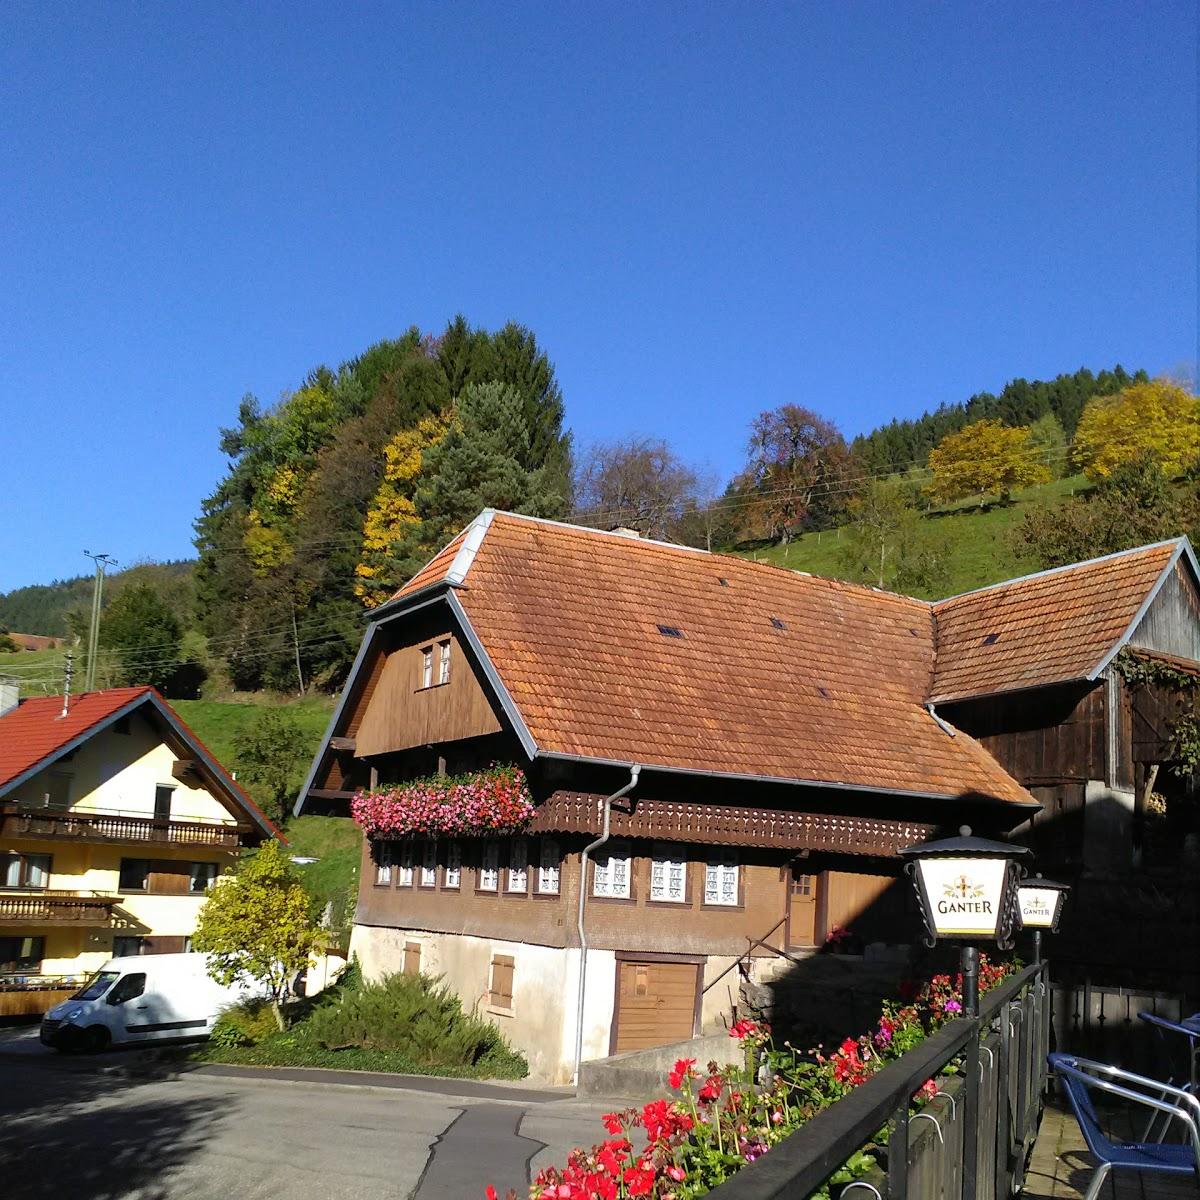 Restaurant "Josef Disch Gasthaus Zur Sonne" in Elzach